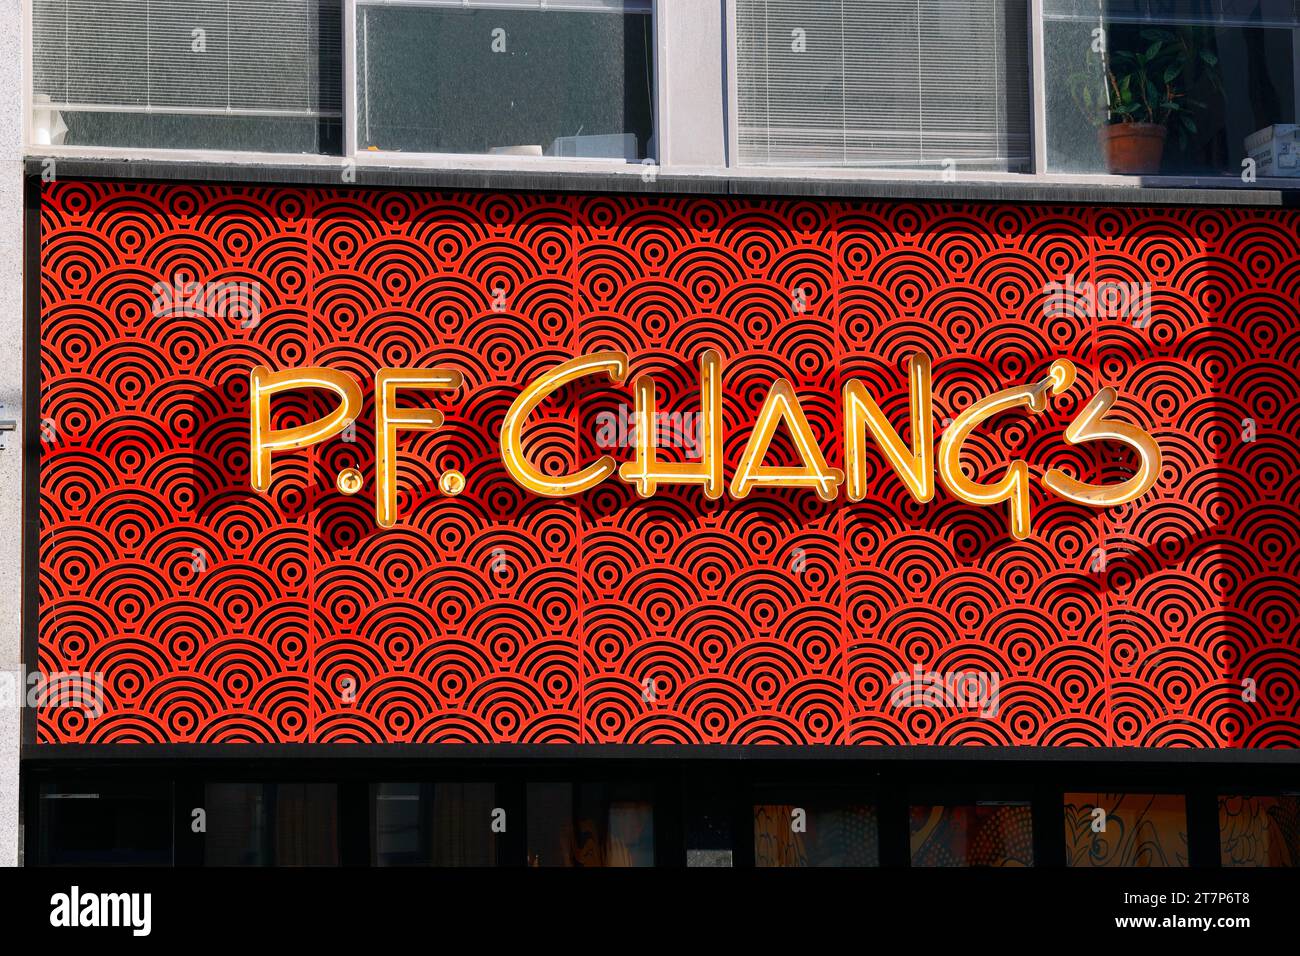 Signalétique pour P.F. Chang's, une chaîne de restaurants fusion sino-américains à service complet située dans le quartier Union Square/Greenwich Village de Manhattan. Banque D'Images